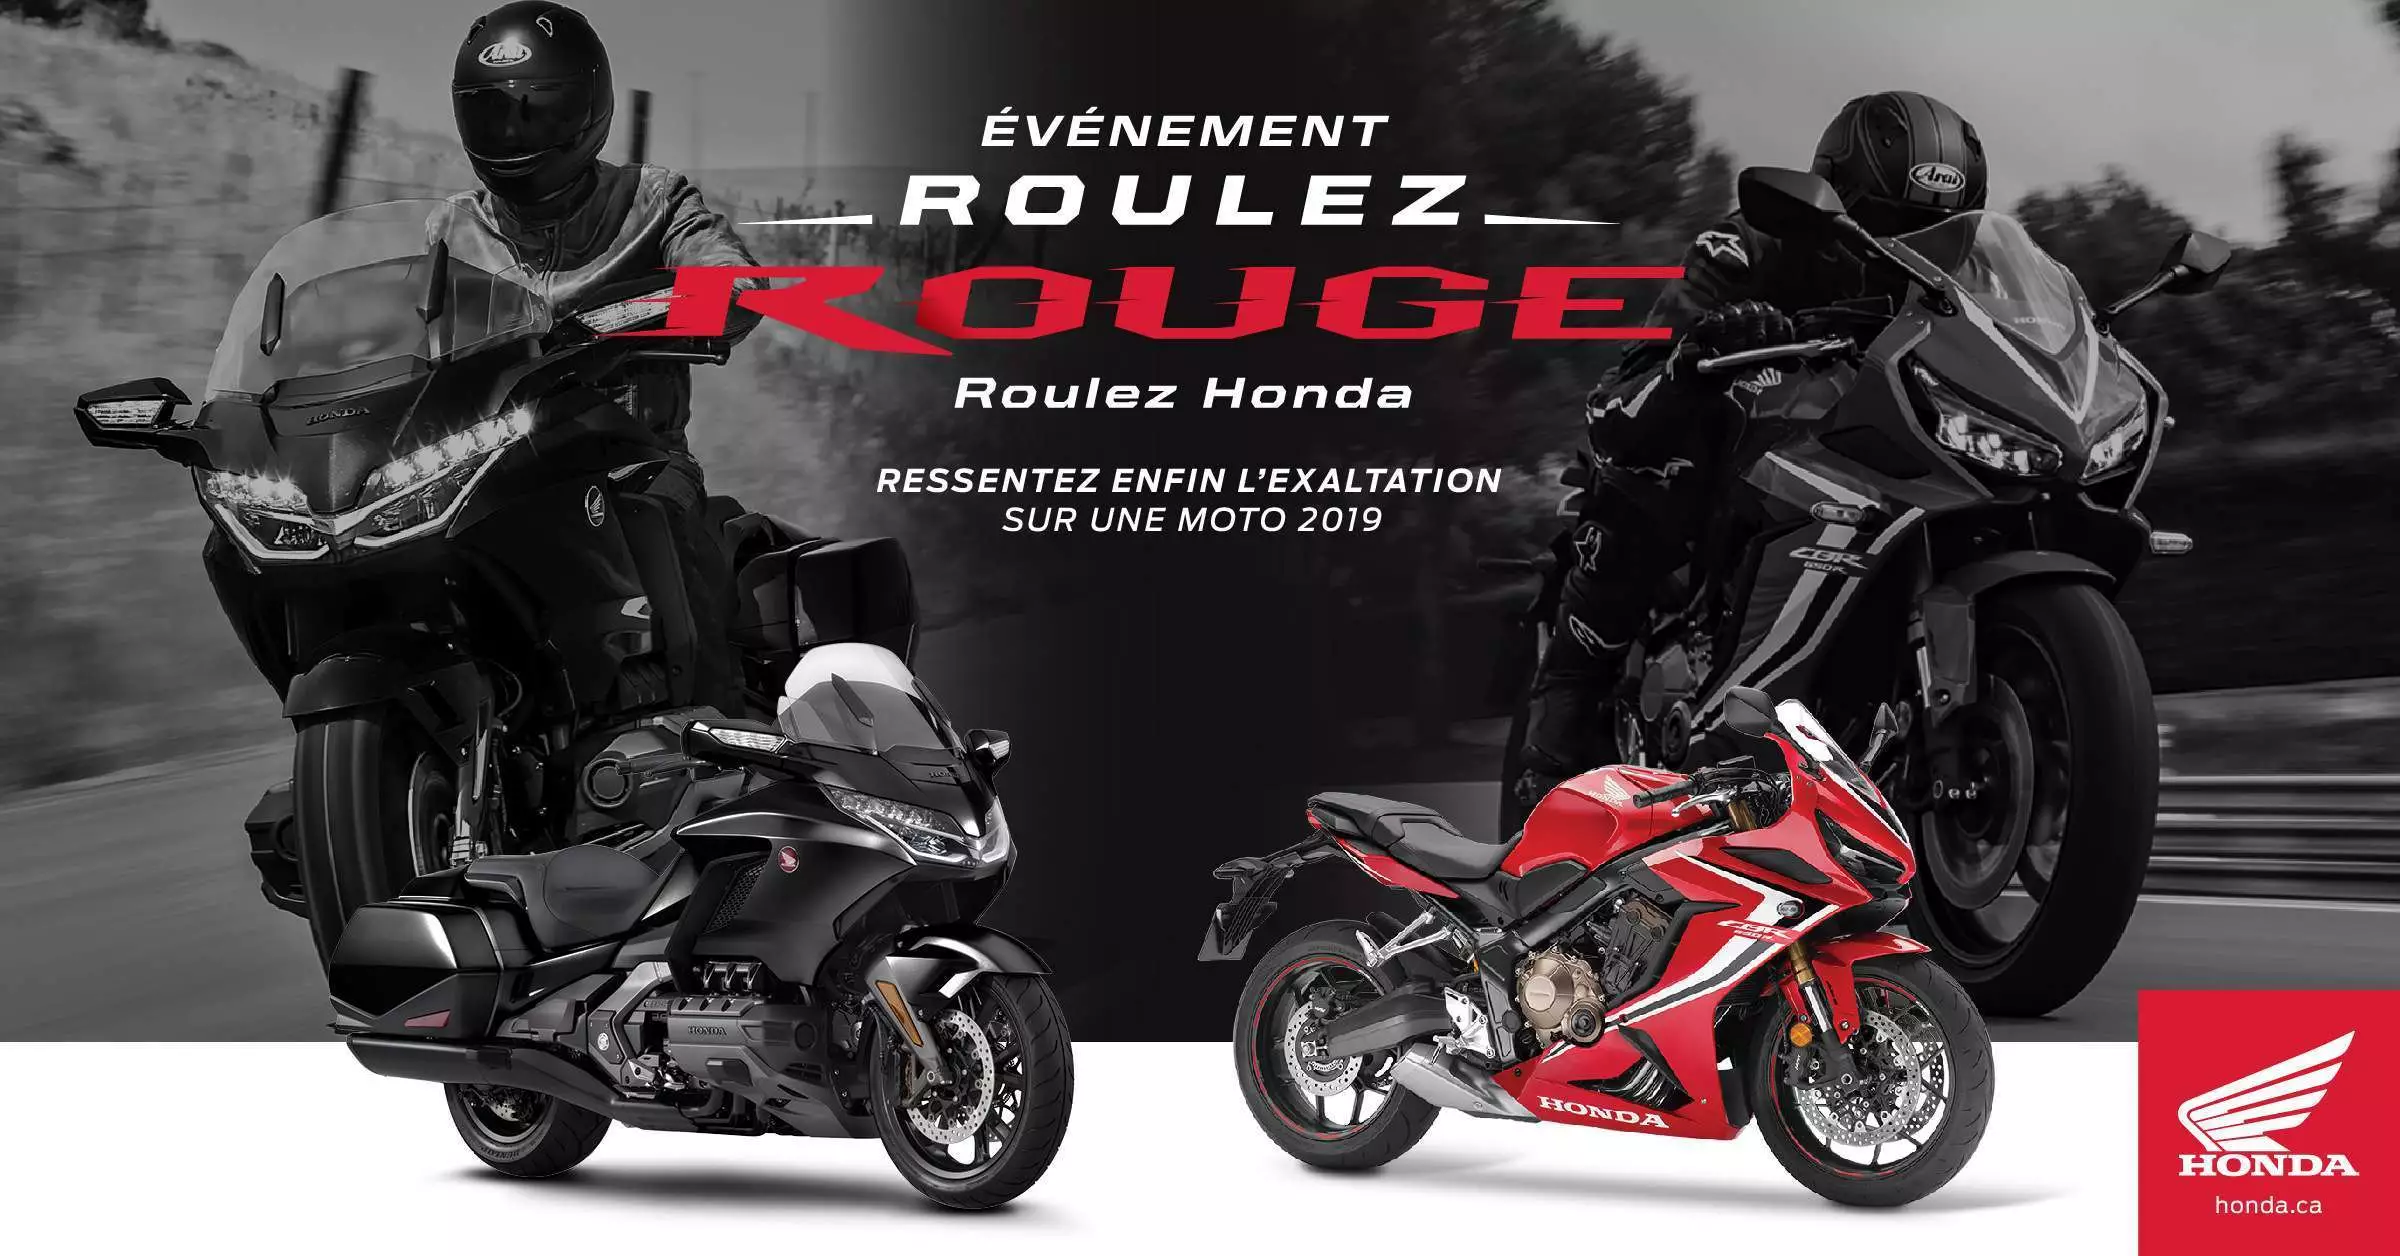 L’événement Roulez rouge Roulez Honda est en cours !